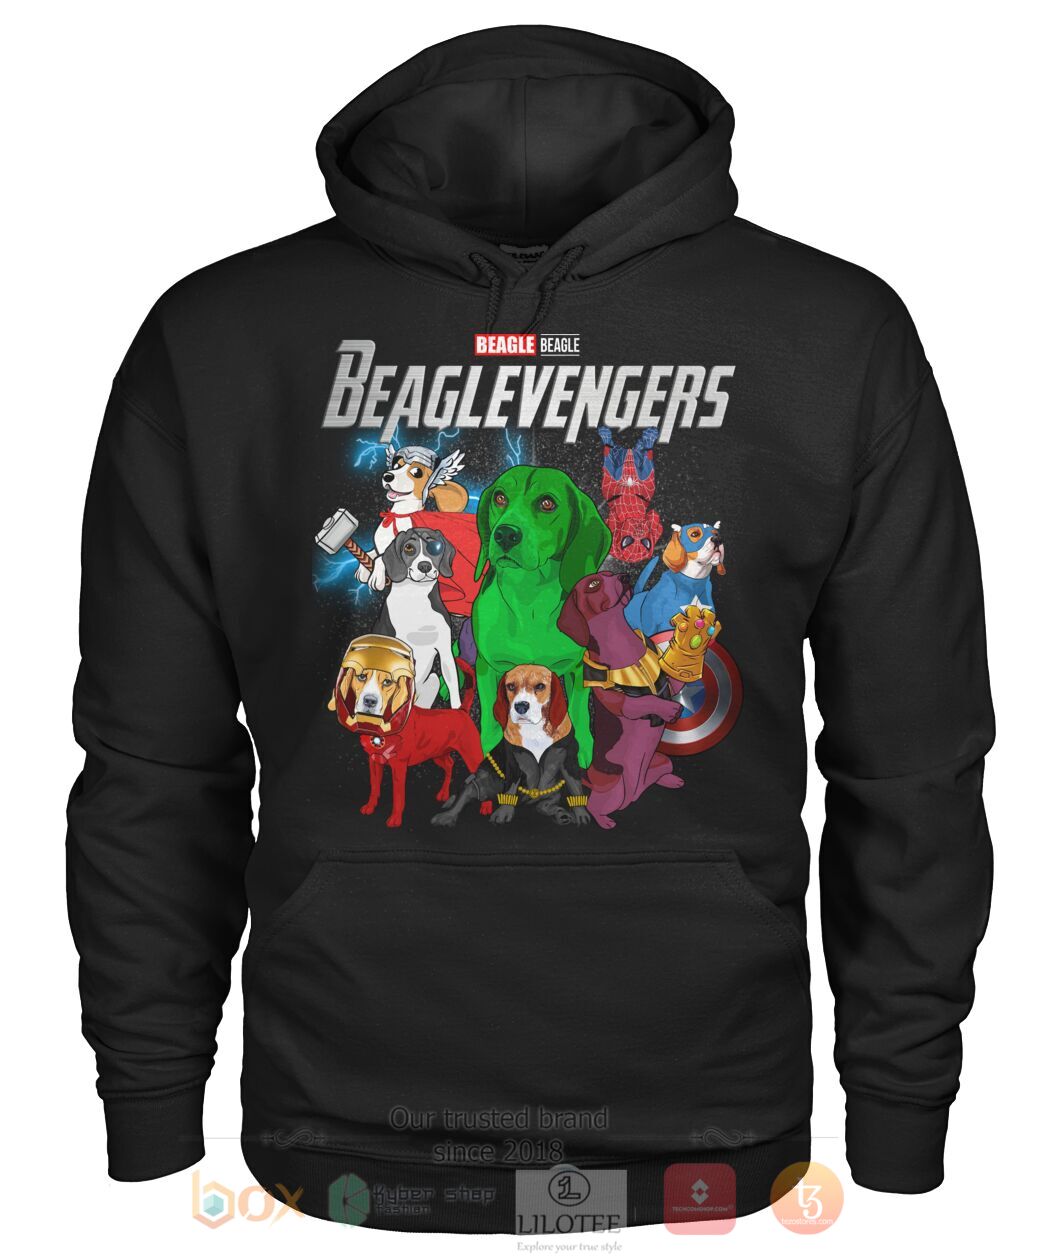 Beaglevengers 3D Hoodie Shirt 1